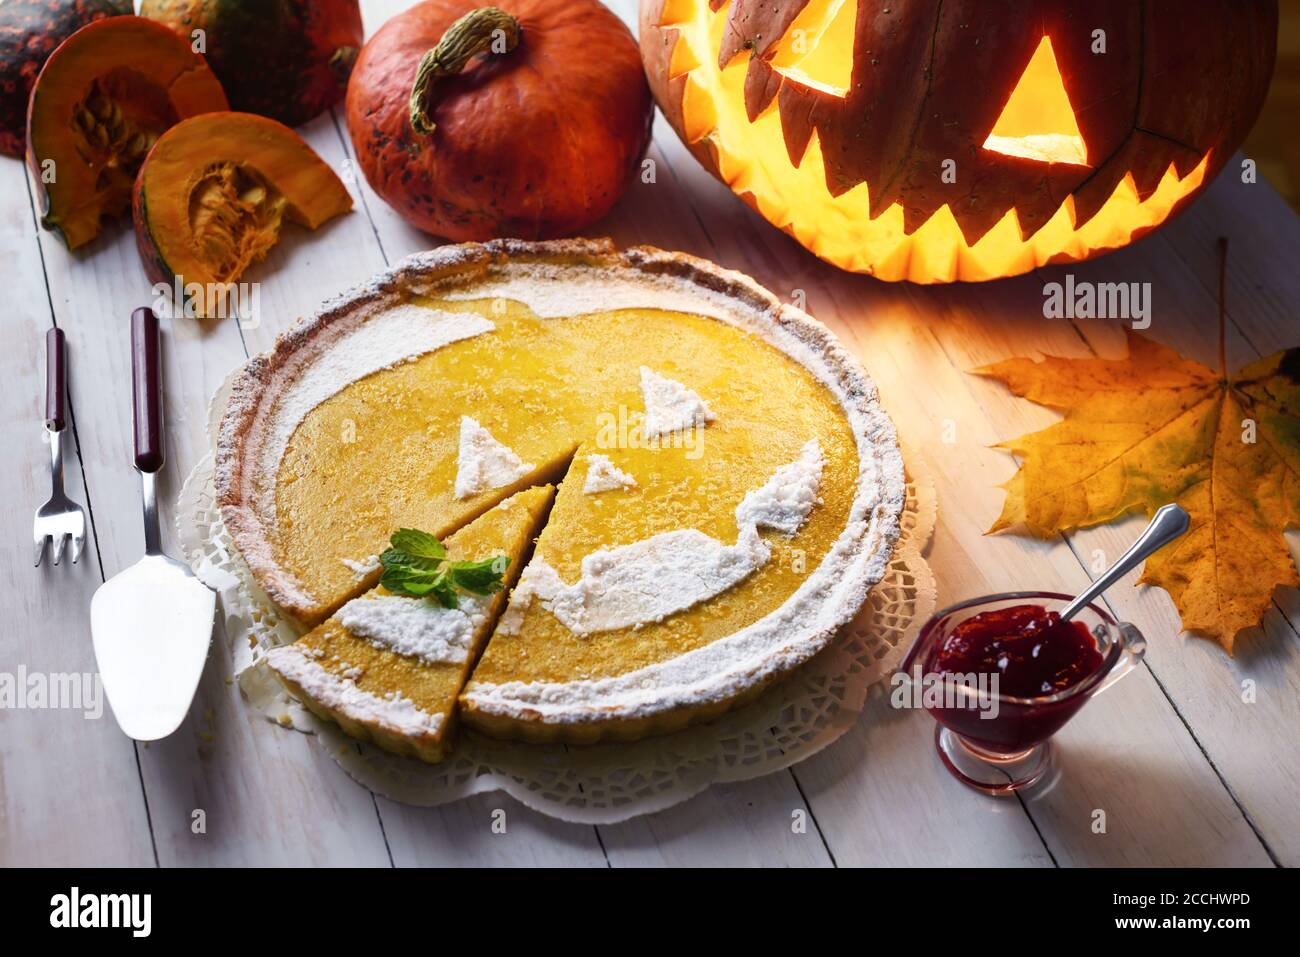 Gâteau de citrouille d'halloween maison sucré avec feuille de menthe. Jack-o-lanterne, feuilles de frêne et confiture de baies de vache autour Banque D'Images